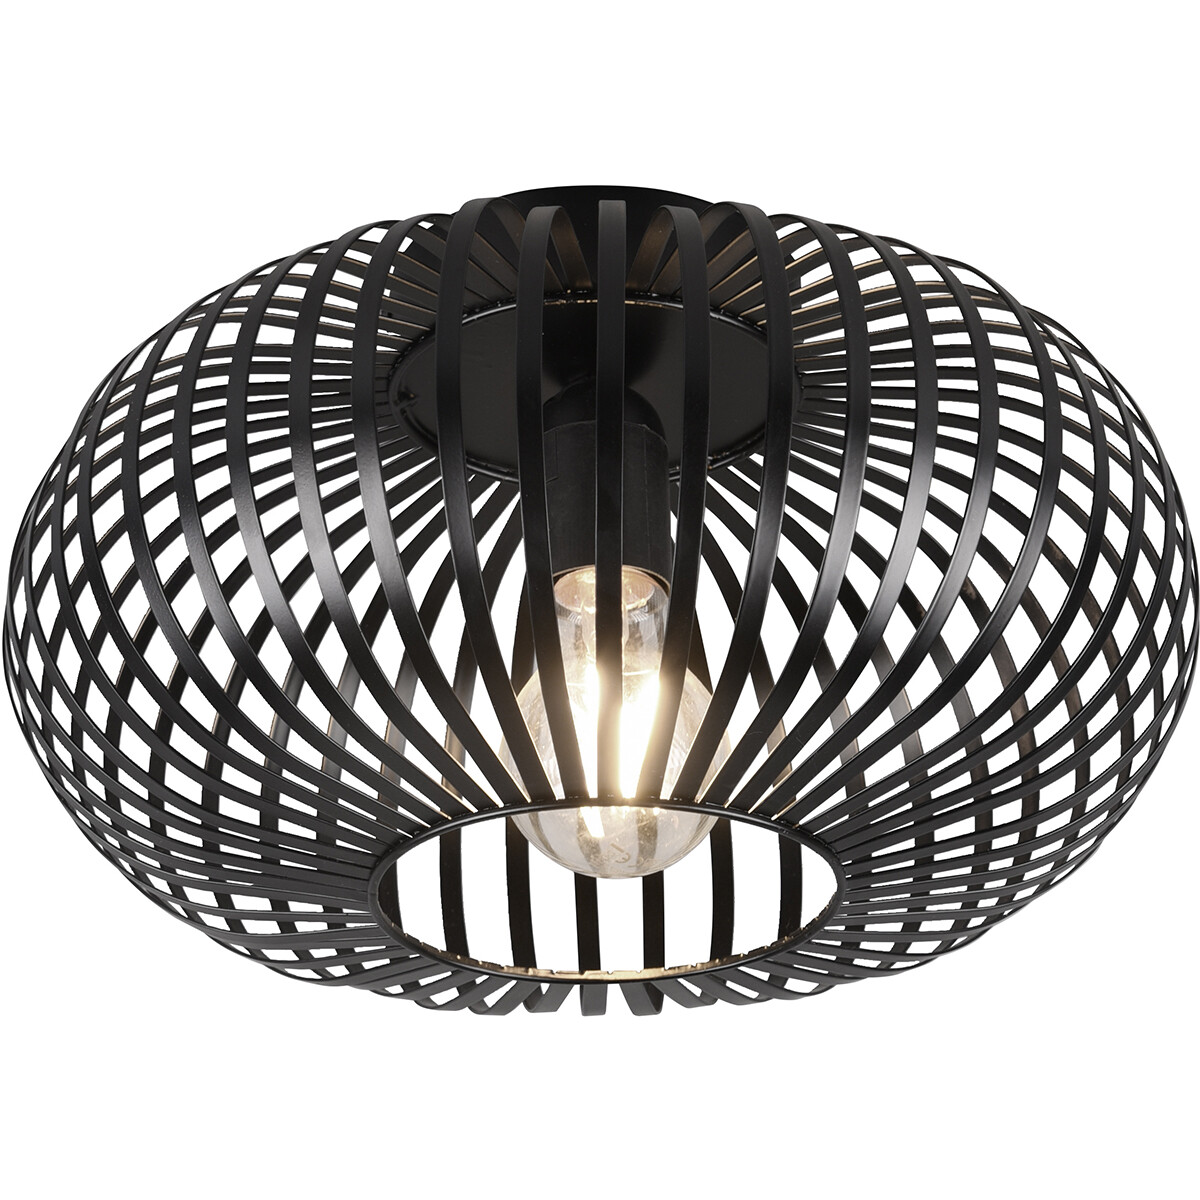 LED Plafondlamp - Plafondverlichting - Trion Johy - E27 Fitting - Rond - Industrieel - Mat Zwart - A